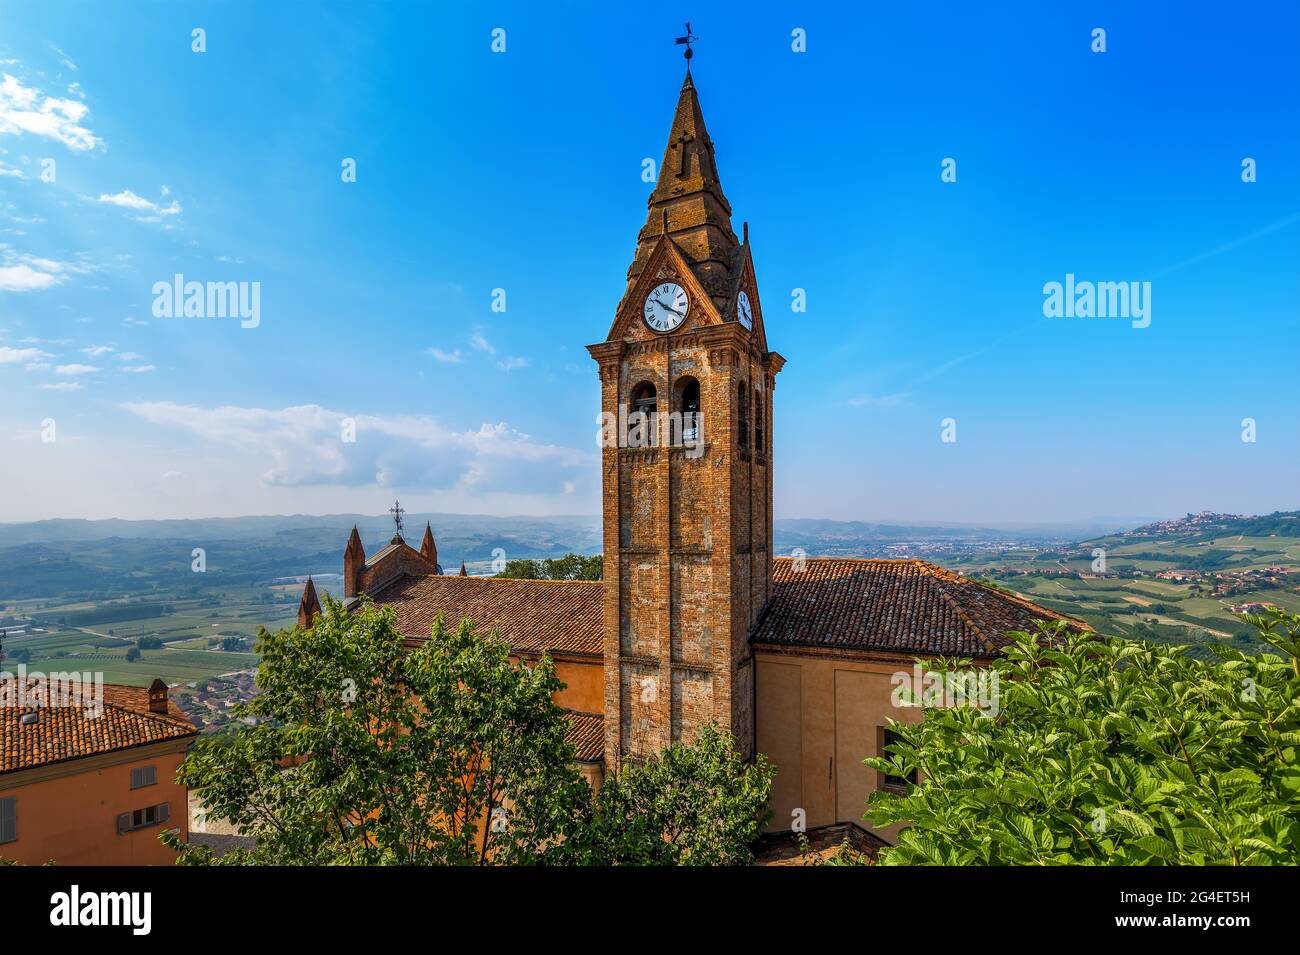 Blick von oben auf das Kirchendach und den alten Ziegelglockenglockener mit Uhr unter blauem Himmel in der Kleinstadt Magliano Alfieri im Piemont, Norditalien. Stockfoto